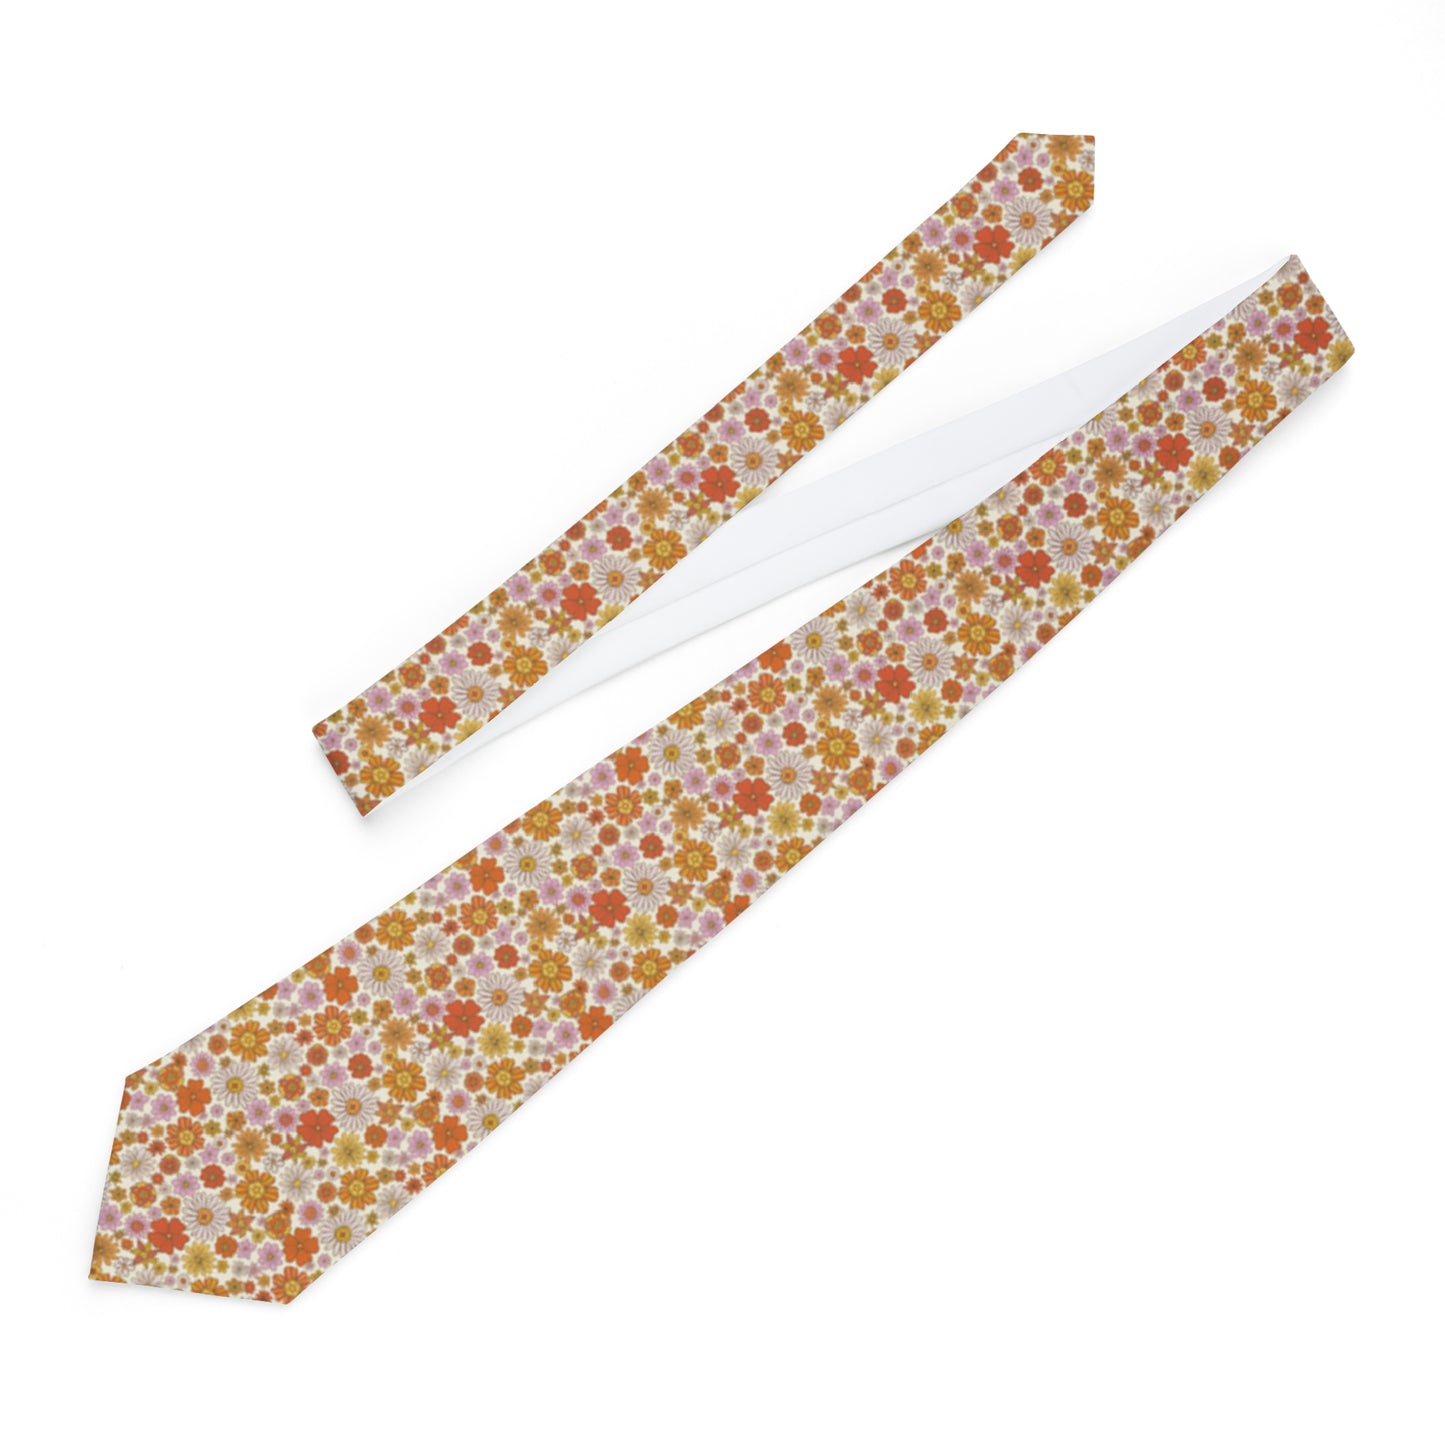 Orange Floral Necktie, Retro Vintage Flowers 70s Neck Tie Fancy Classic Chic Gift for Him Men Tuxedo Groomsmen Groom Wedding Suit Cravat